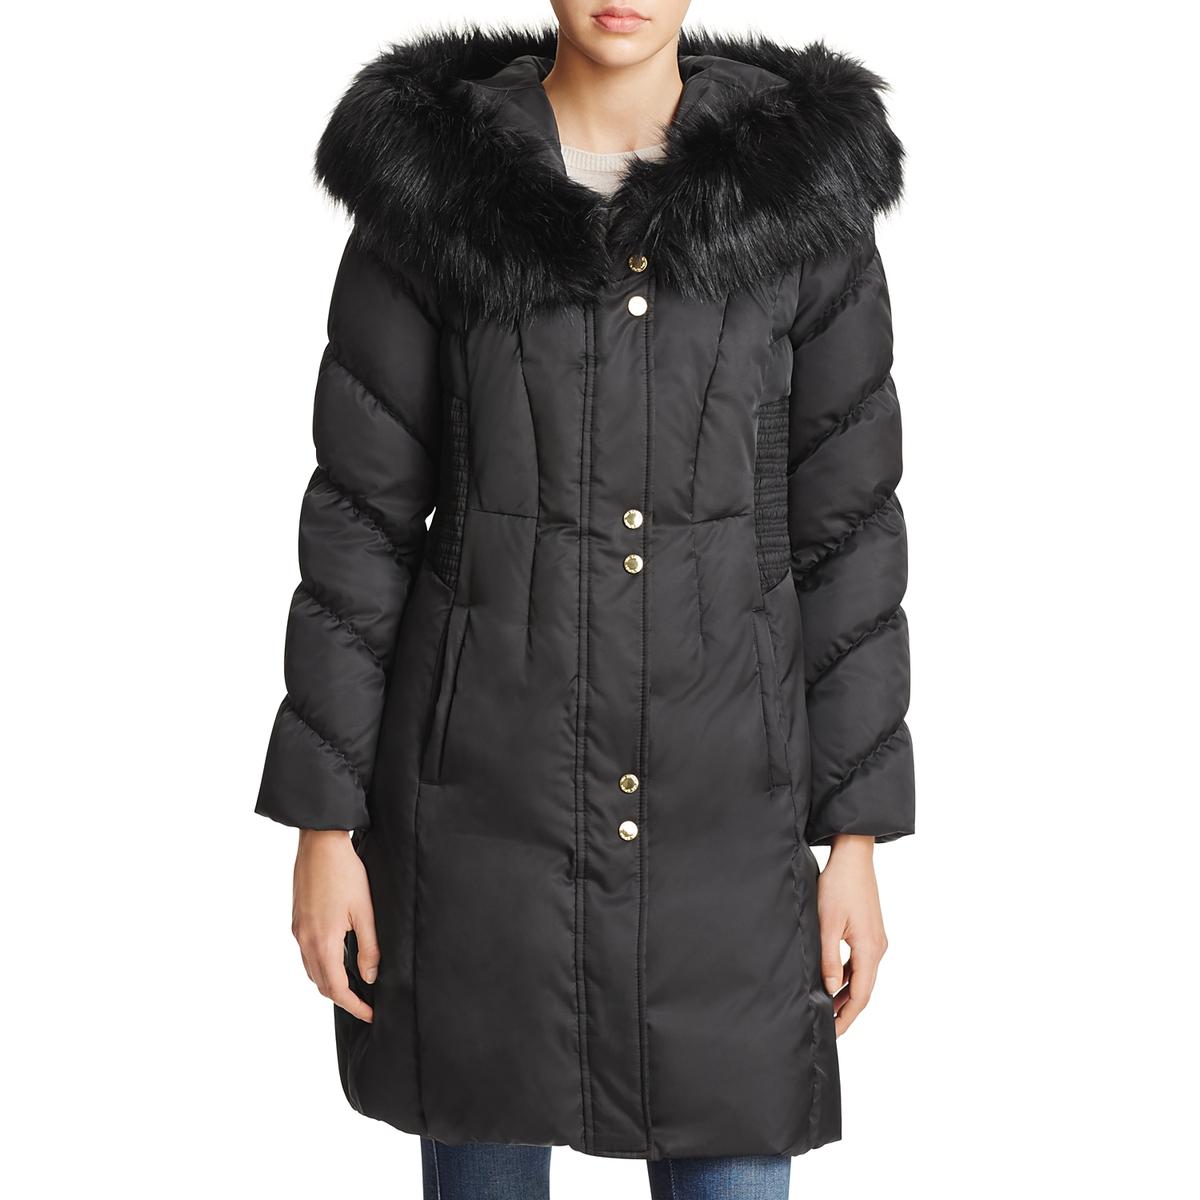 Via Spiga Womens Winter Faux Fur Parka Coat